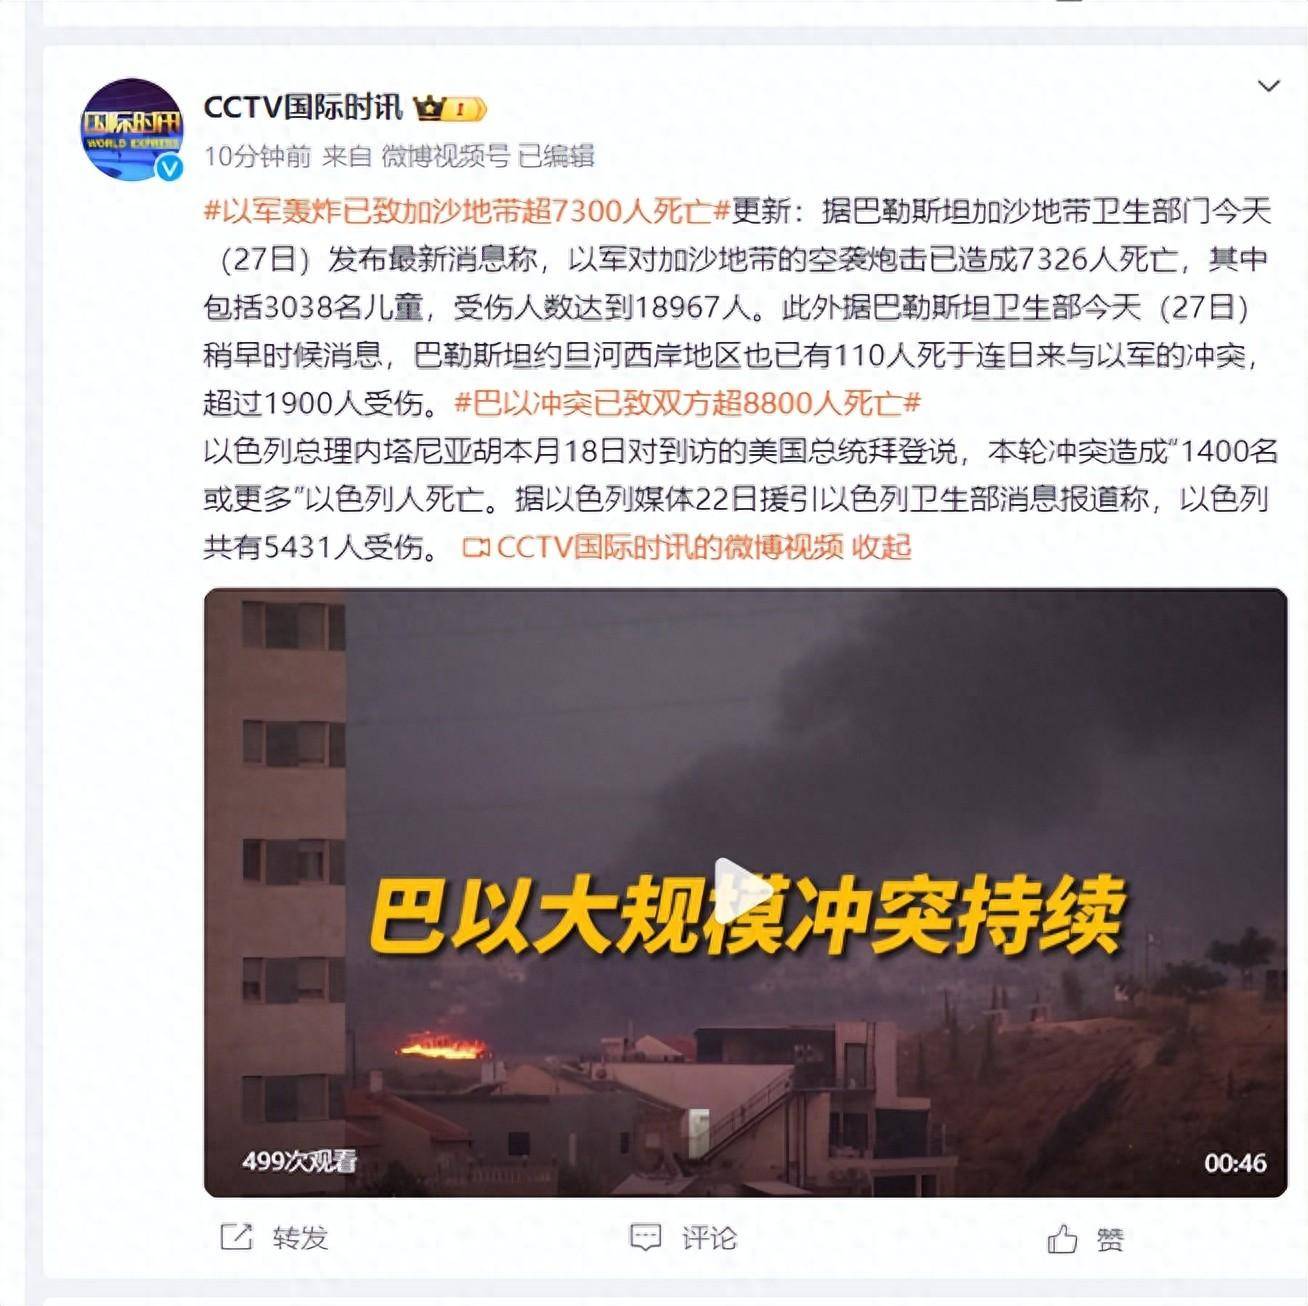 本轮冲突已导致巴以双方超1.98万人死亡-搜狐大视野-搜狐新闻